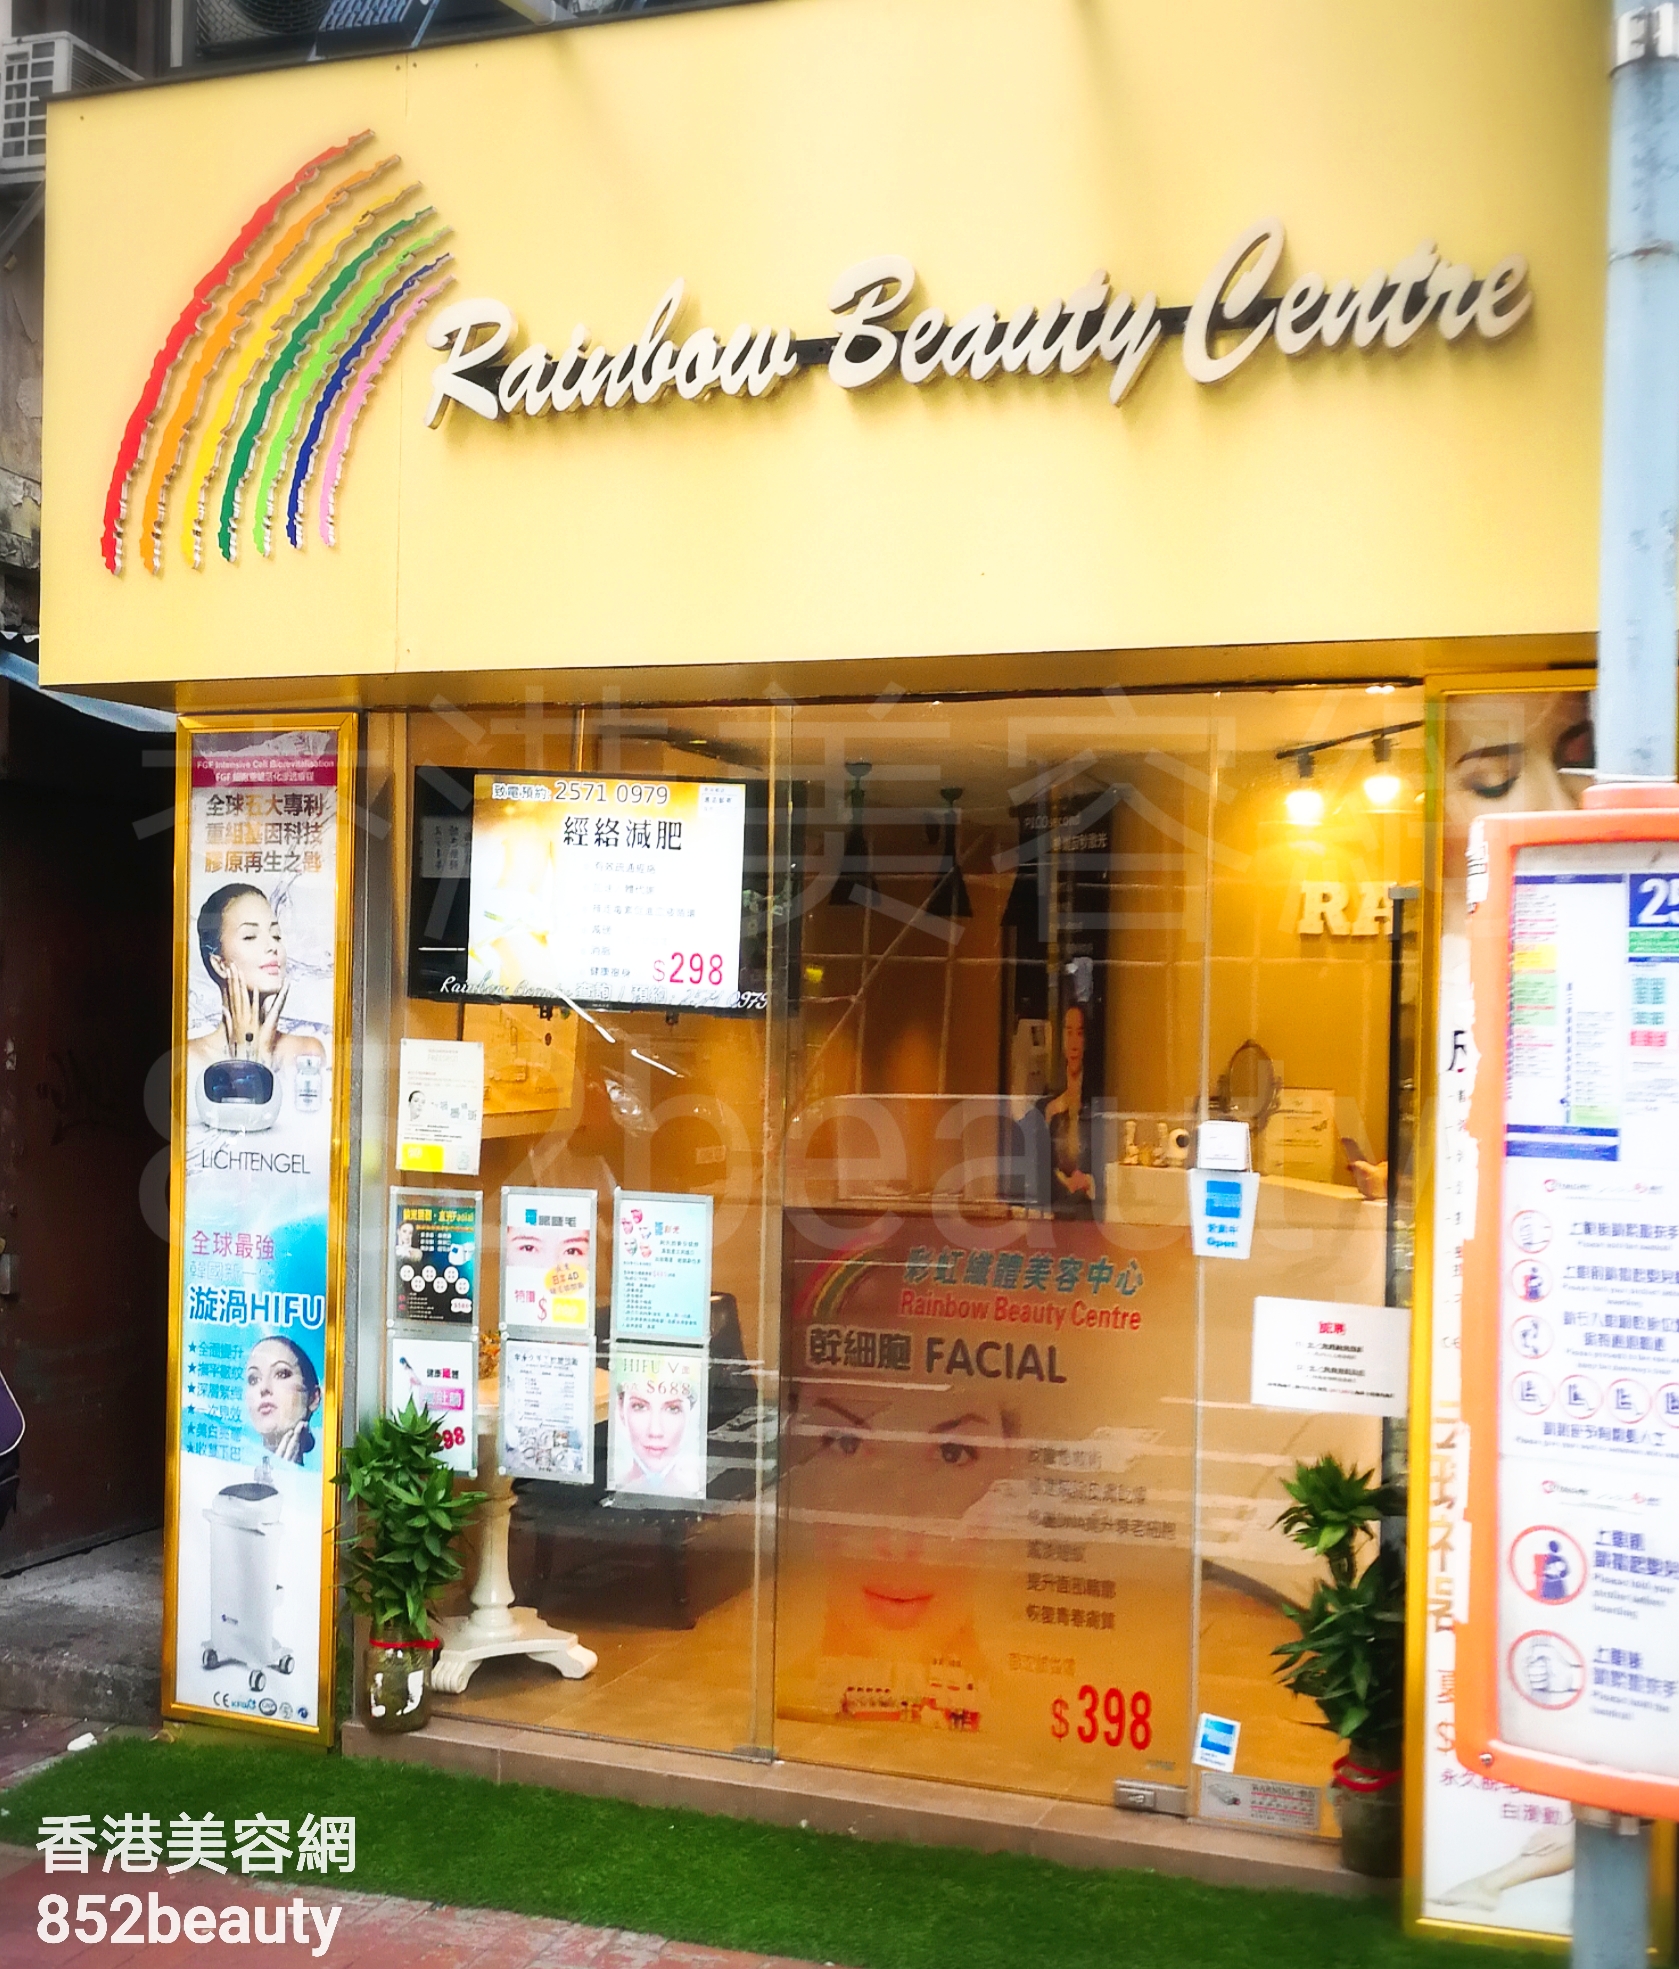 光學美容: Rainbow Beauty Centre